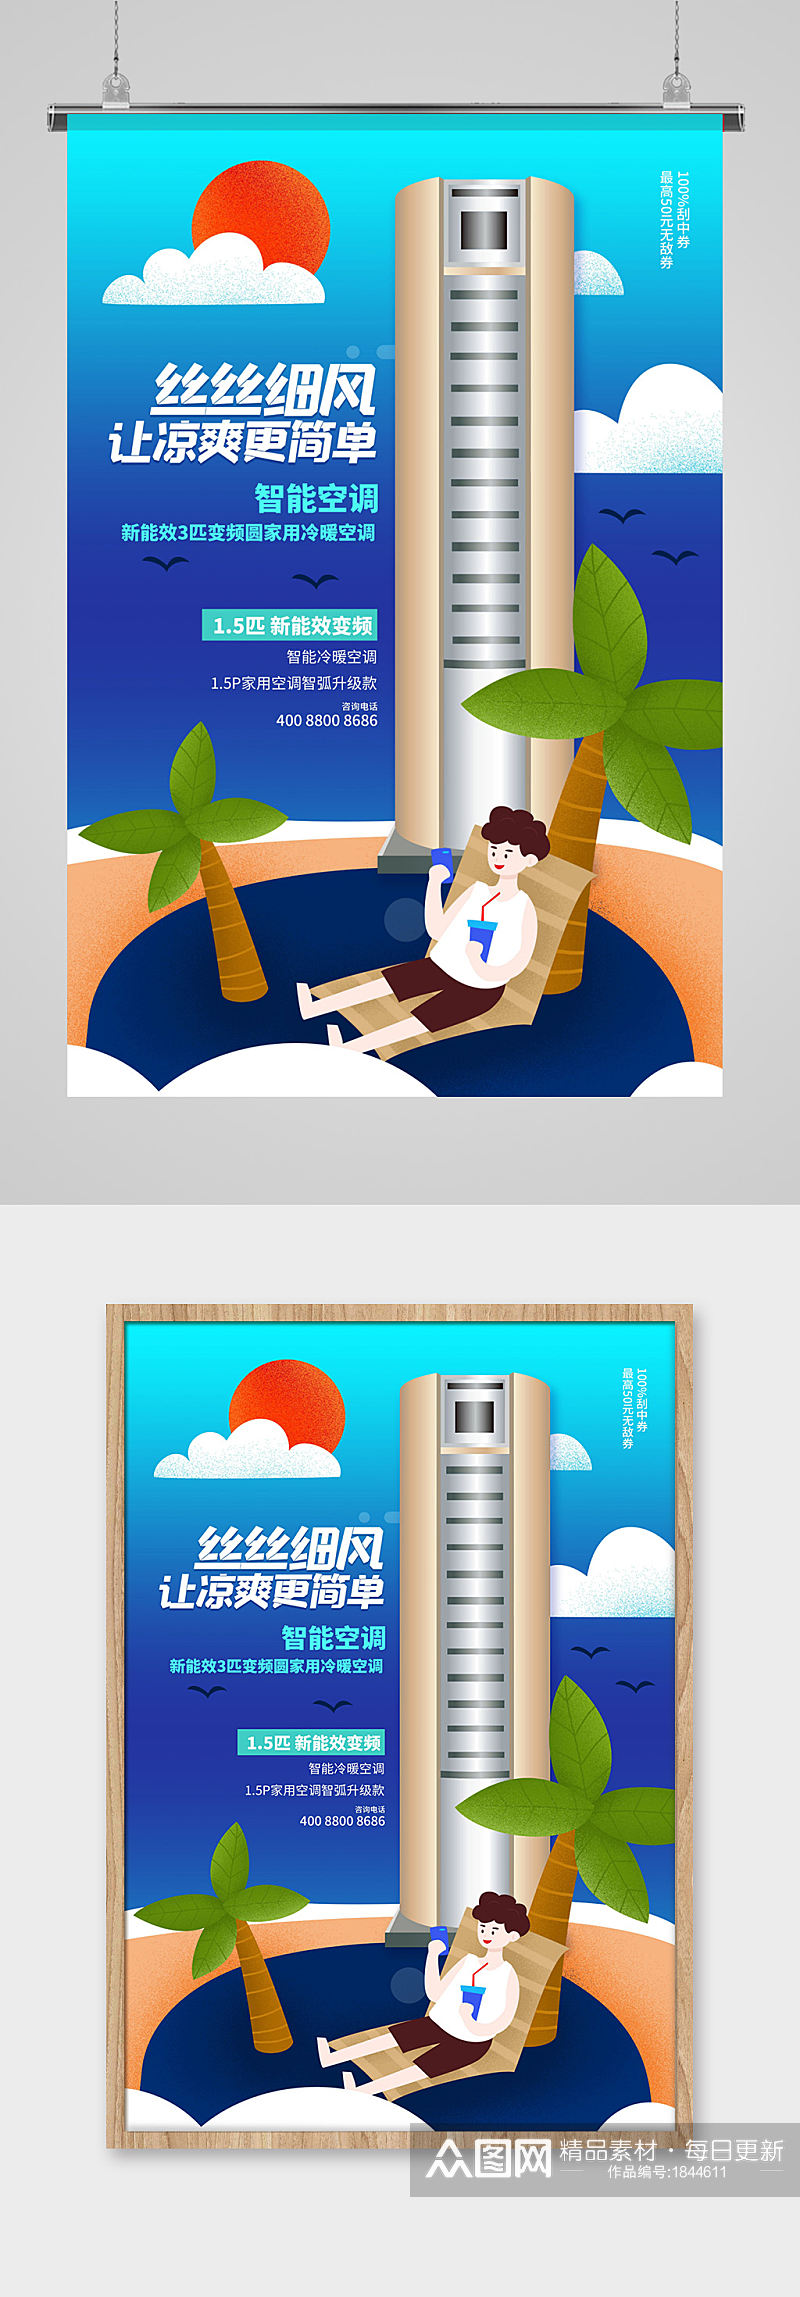 蓝色夏季空调柜式空调海报设计素材